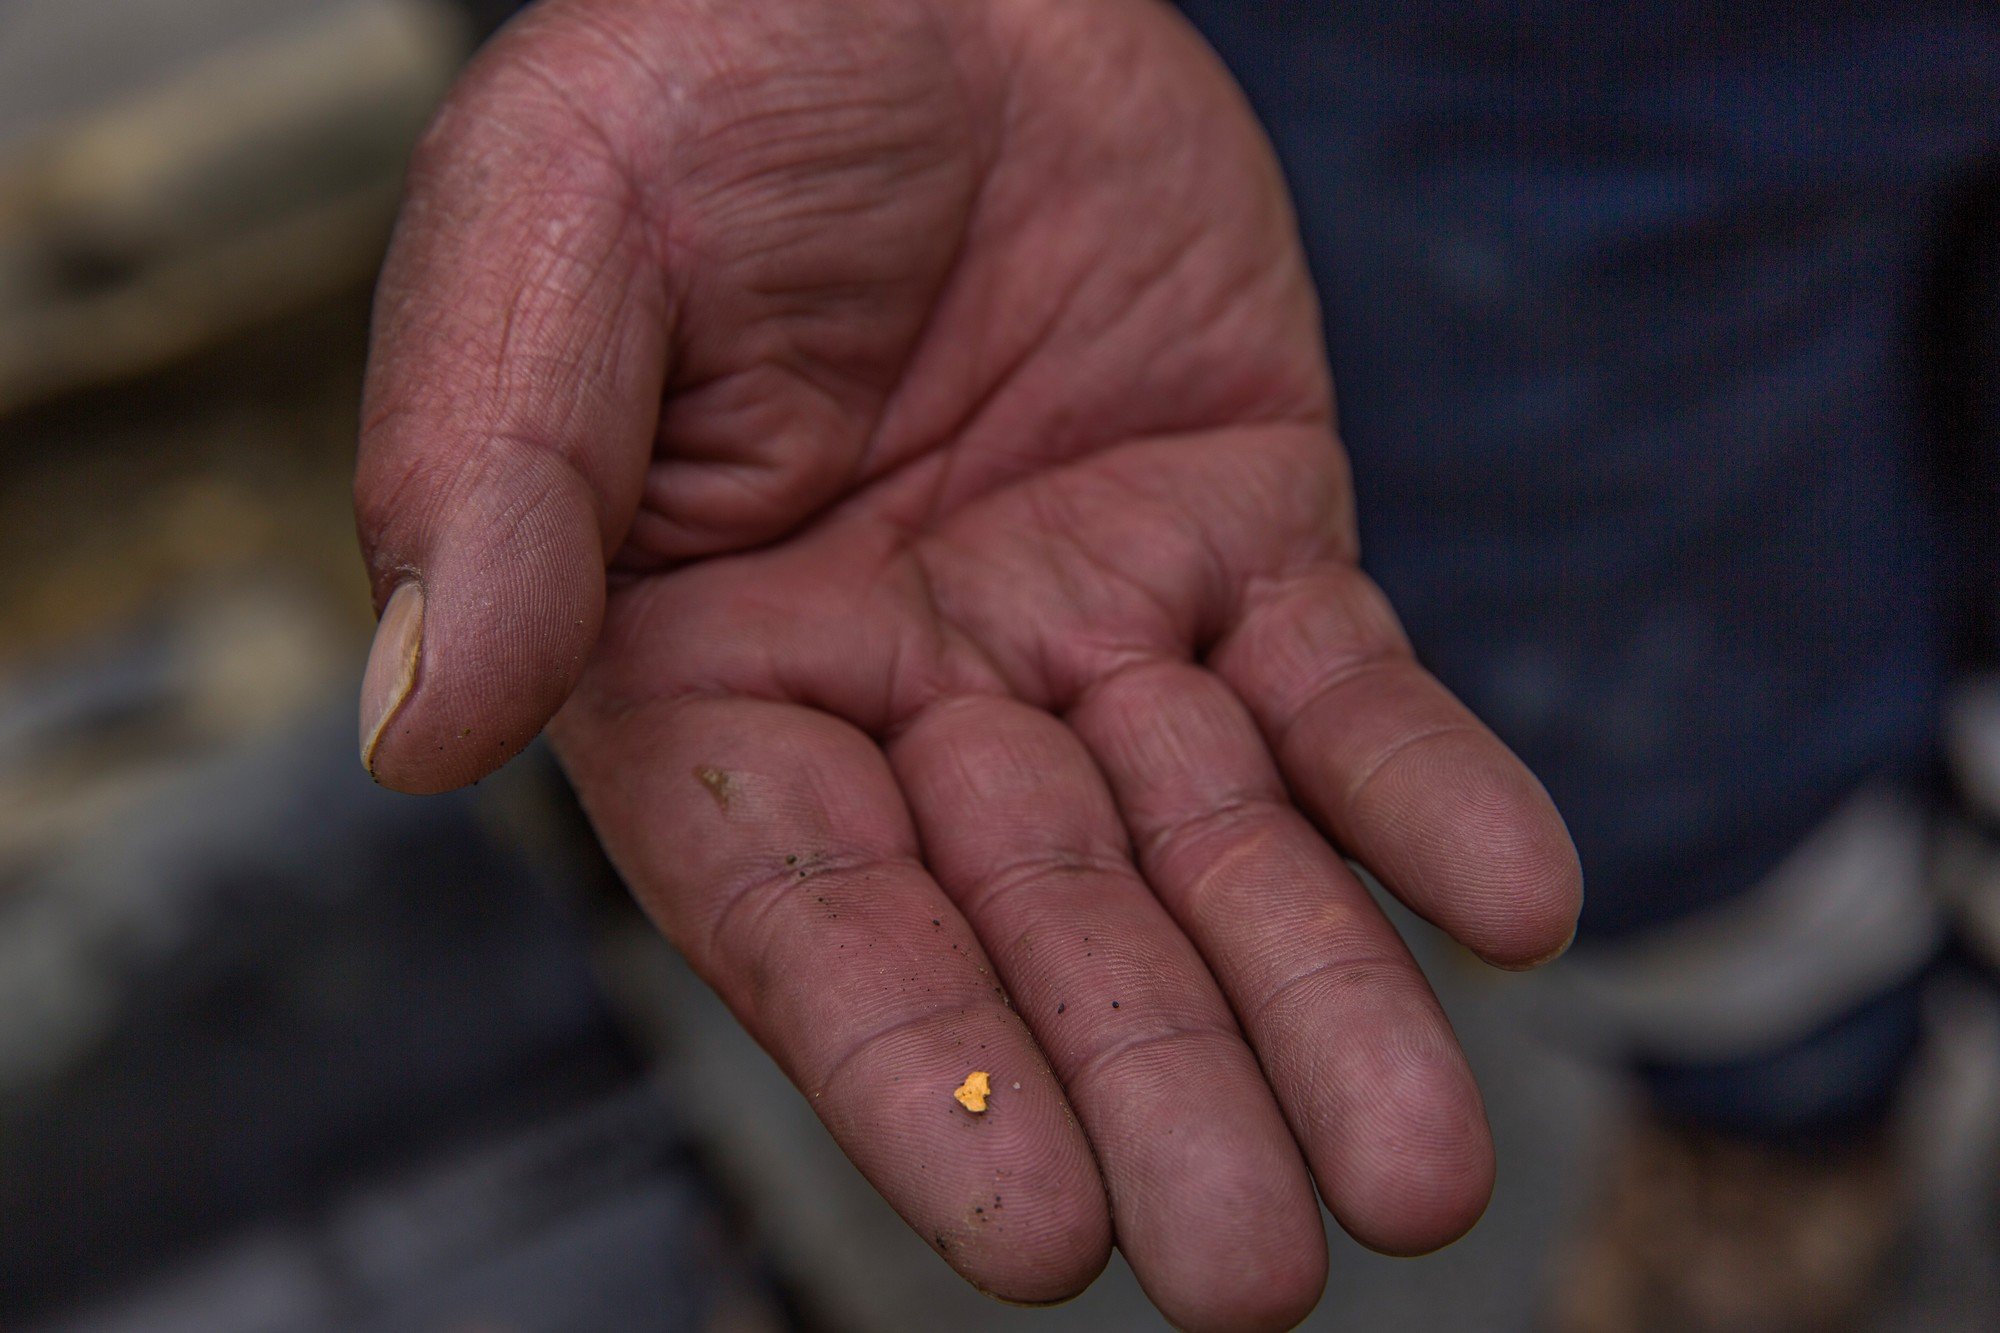 A worker shows a small piece of gold, Peru. Photo credit: Eduardo Martino